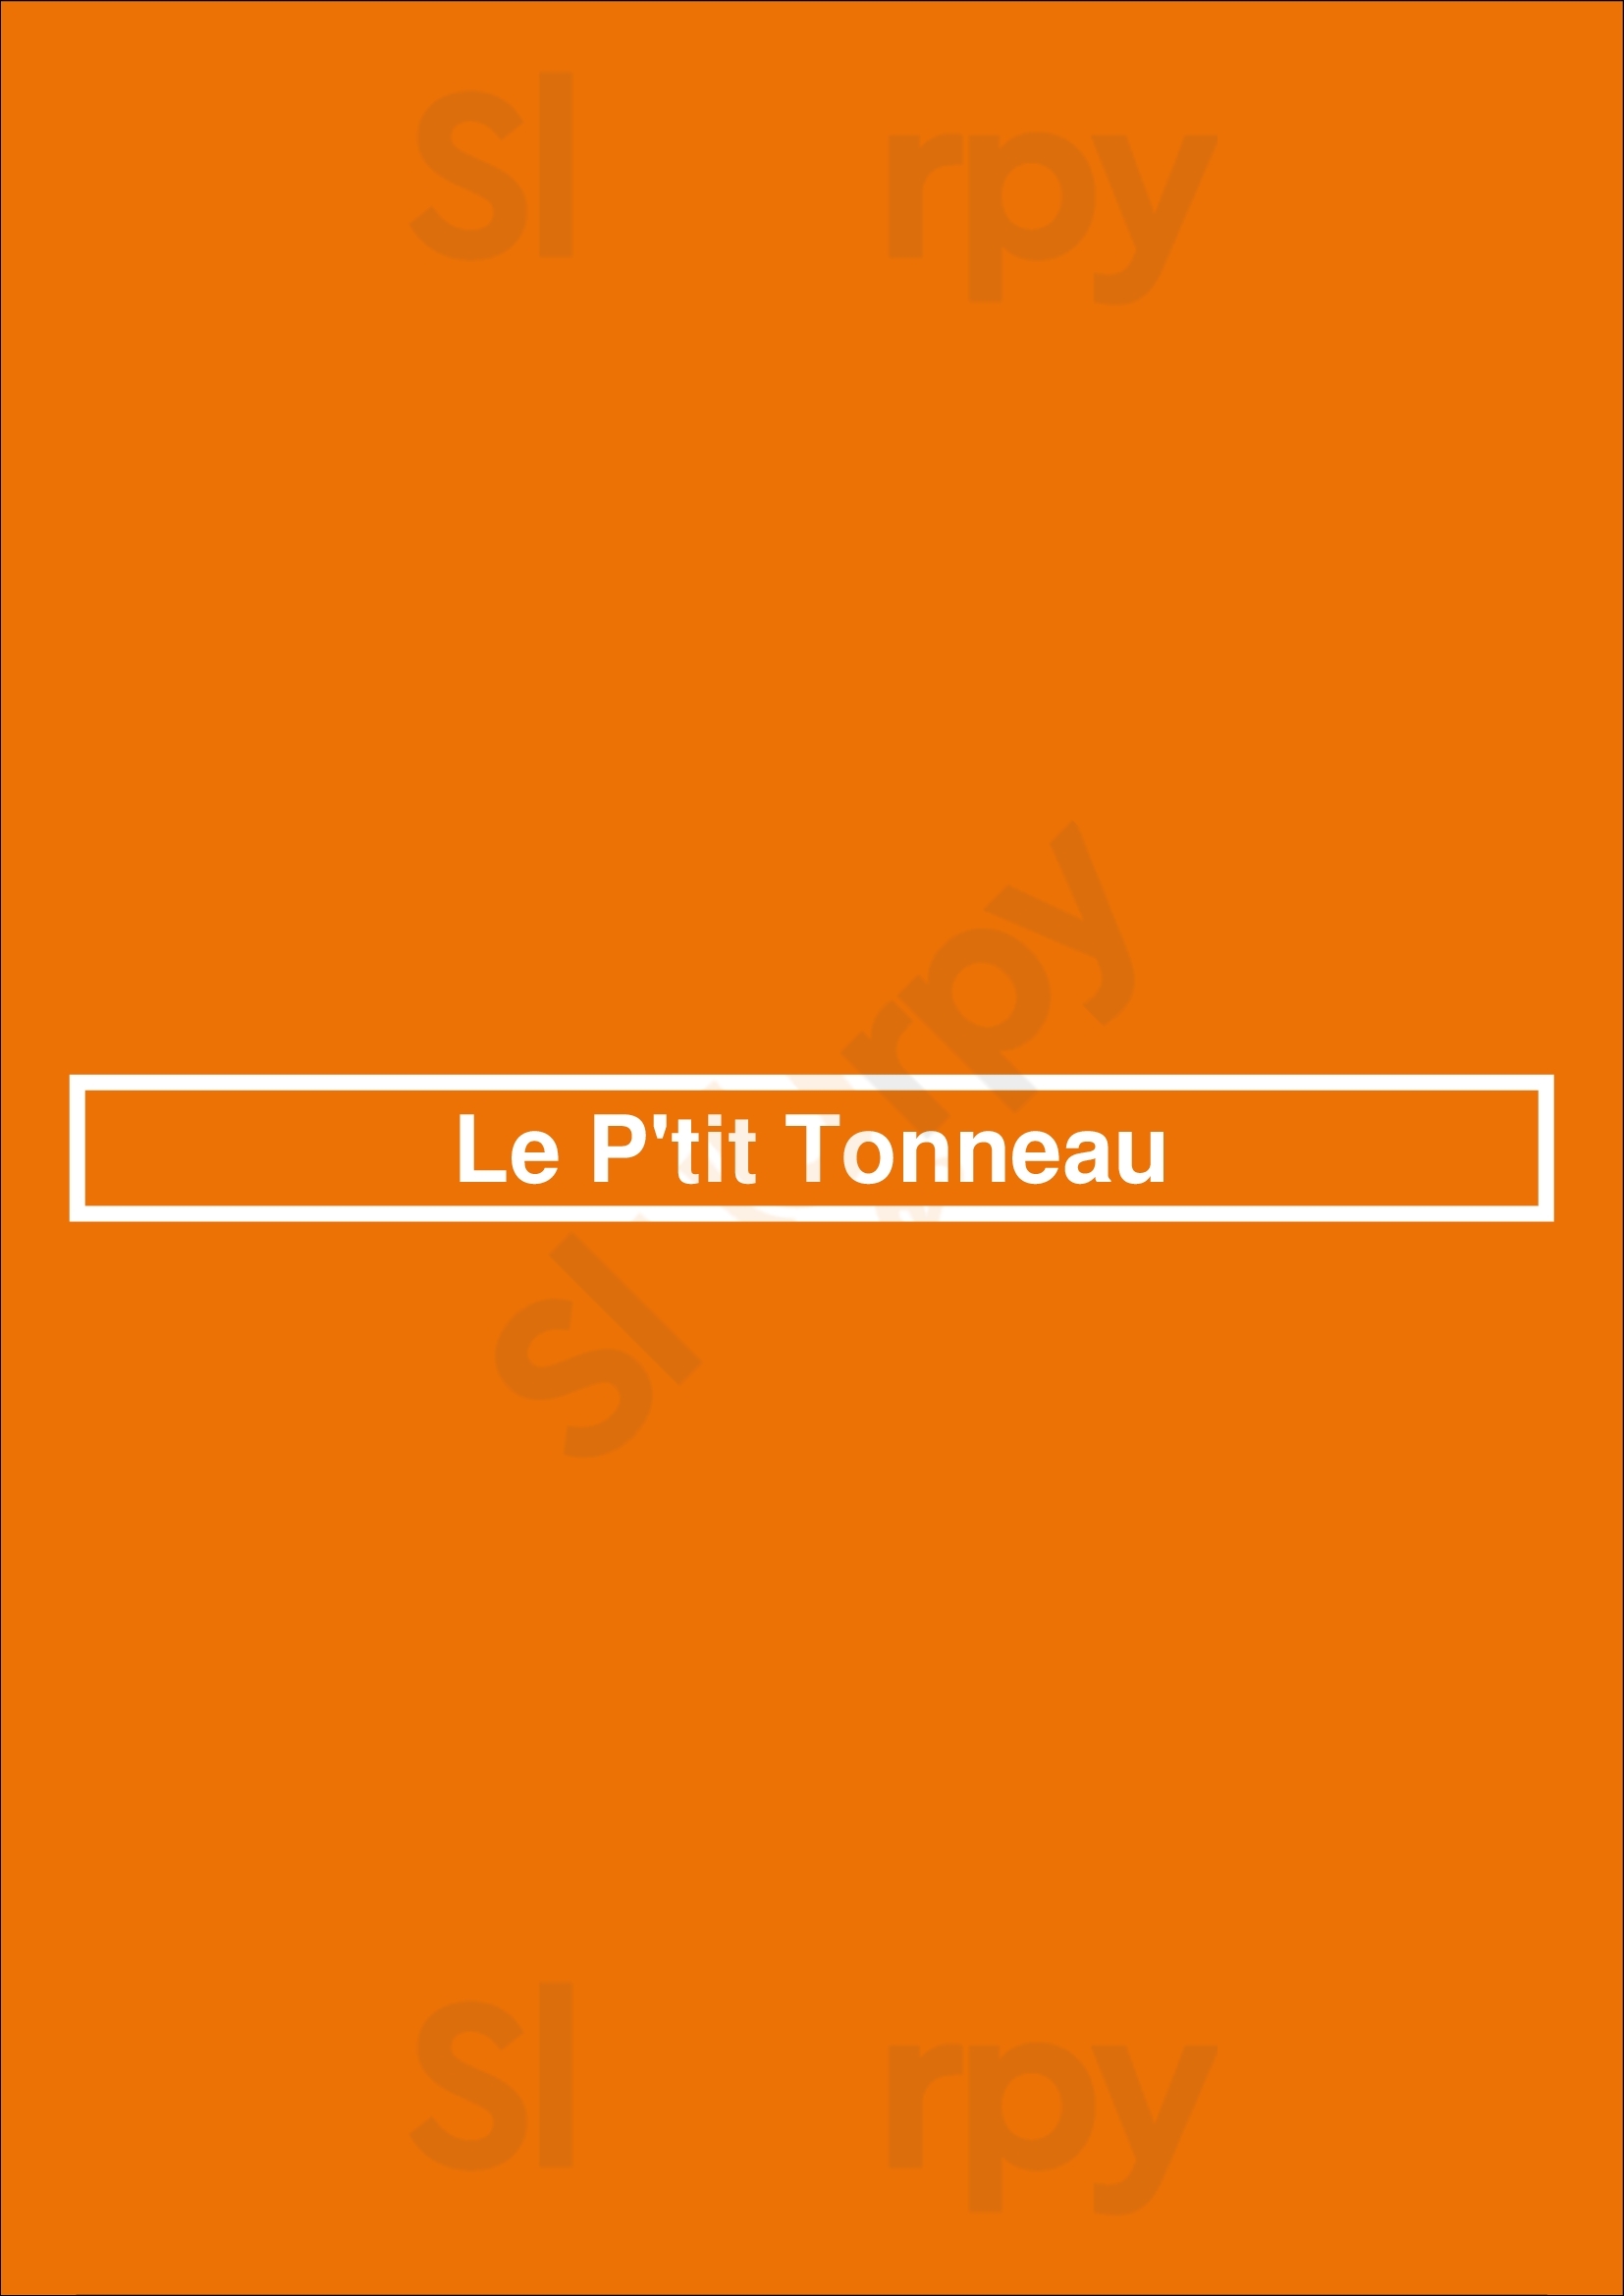 Le P'tit Tonneau Nantes Menu - 1